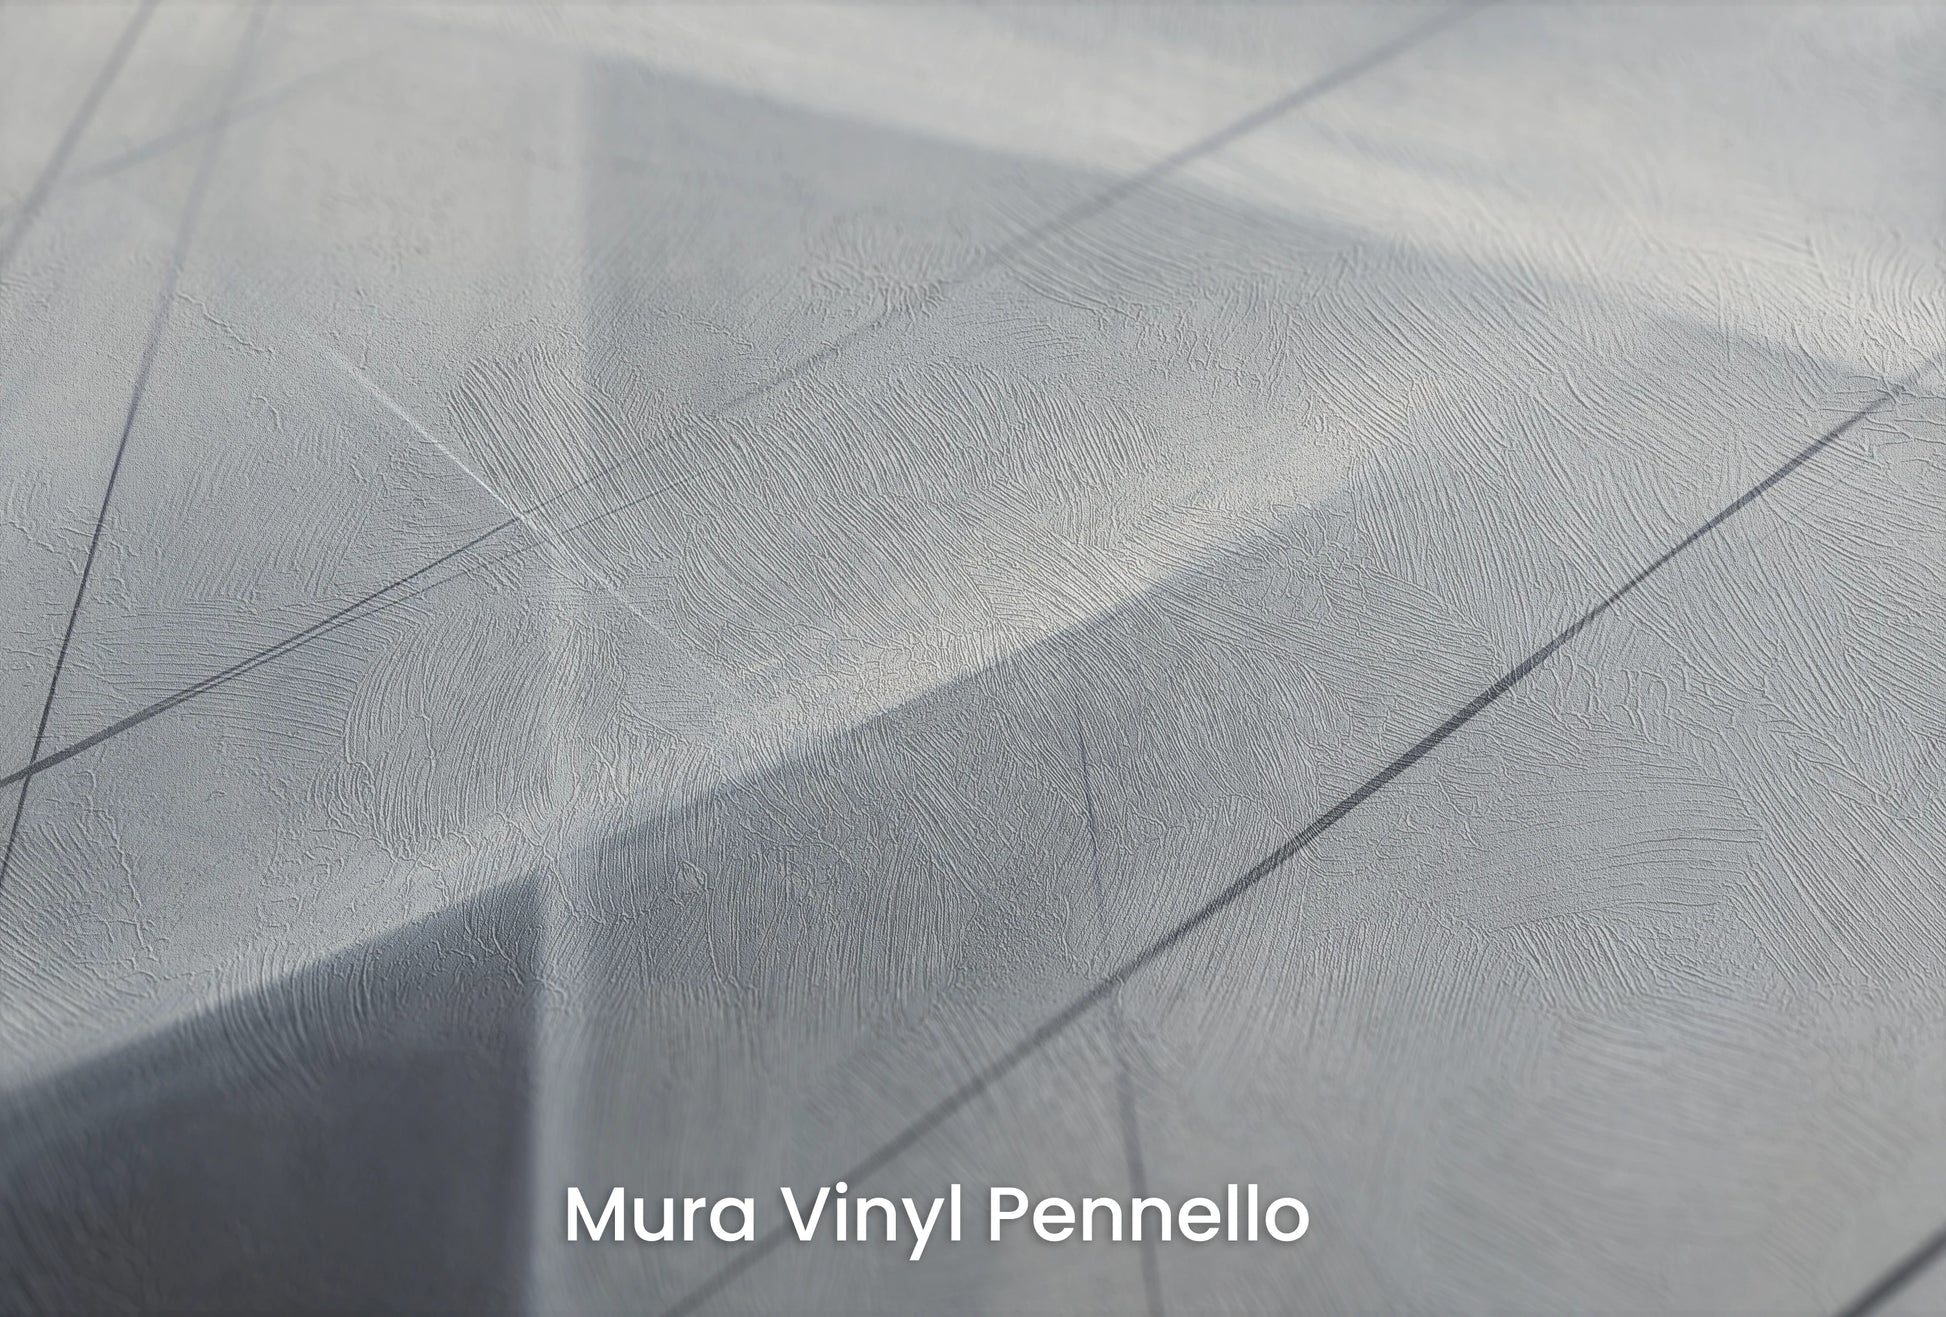 Zbliżenie na artystyczną fototapetę o nazwie Monochrome Network na podłożu Mura Vinyl Pennello - faktura pociągnięć pędzla malarskiego.